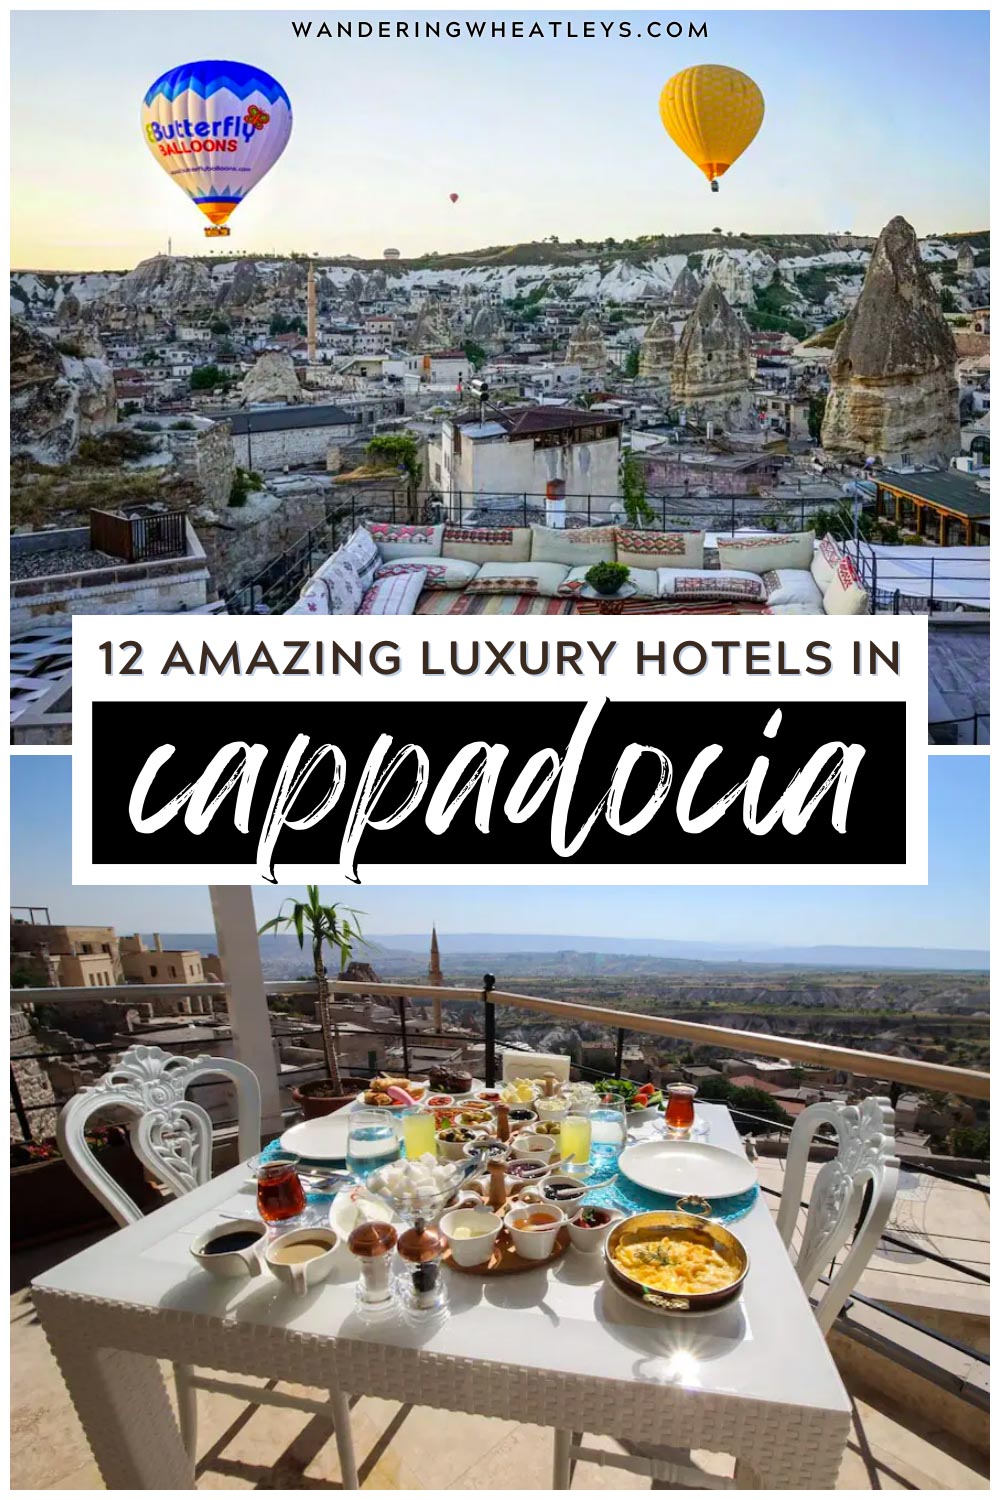 Best luxury Hotels in Cappadocia, Turkey